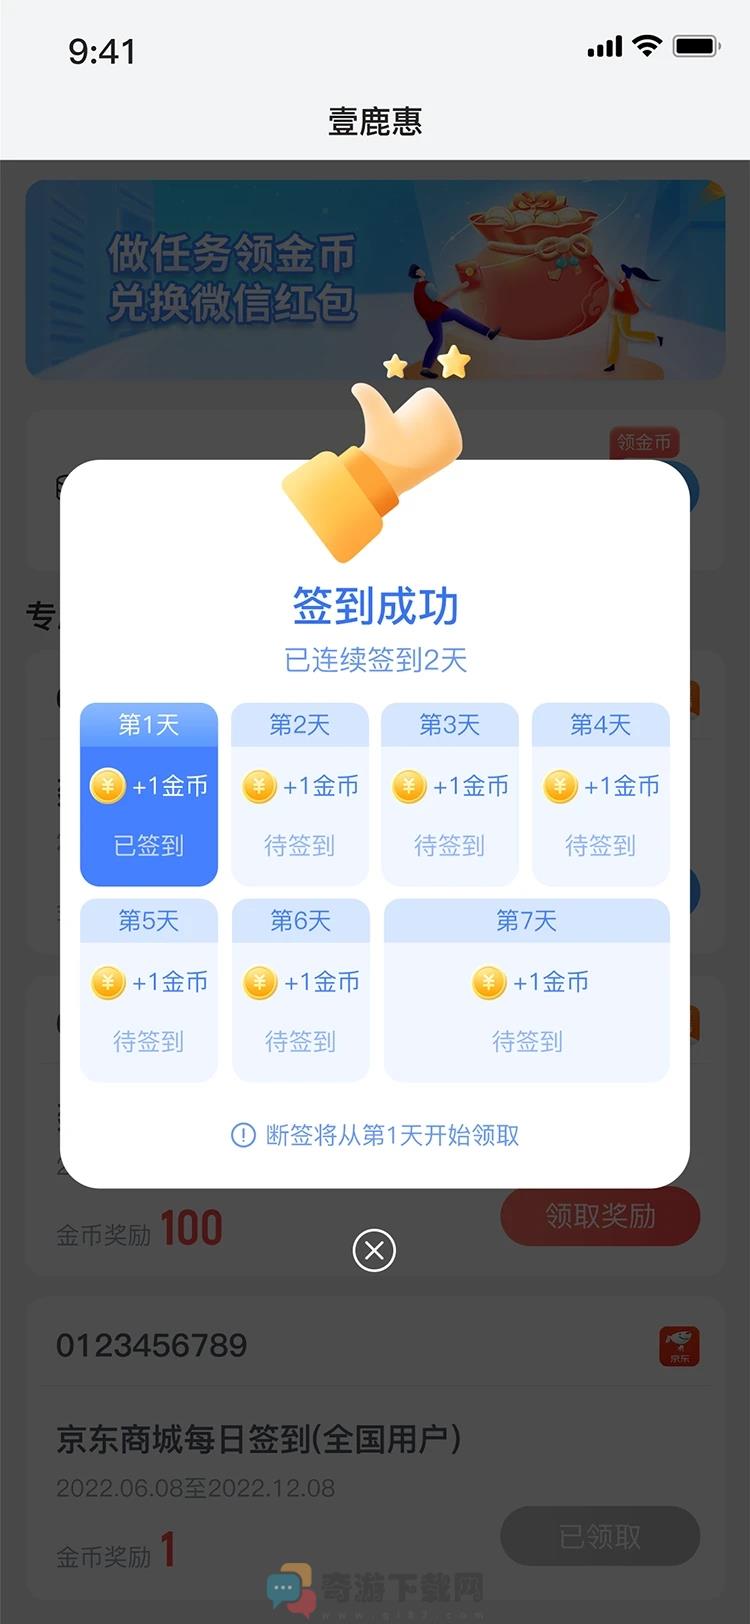 壹鹿惠福利平台官方最新版app图片1